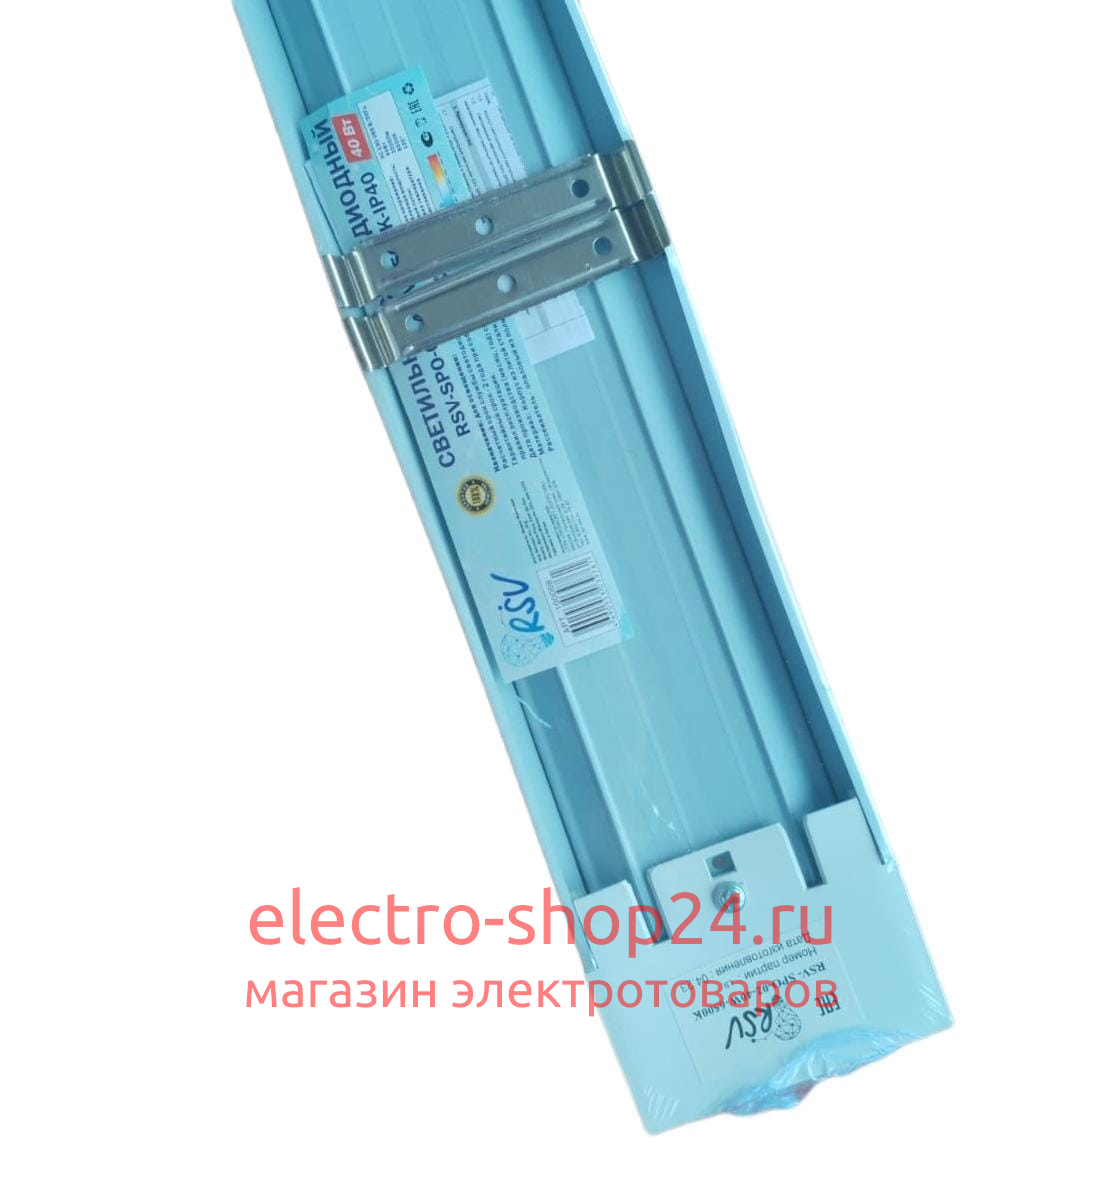 Светодиодный светильник RSV-SPO-02-40W-6500K-IP40 1200mm 100008 100008 - магазин электротехники Electroshop